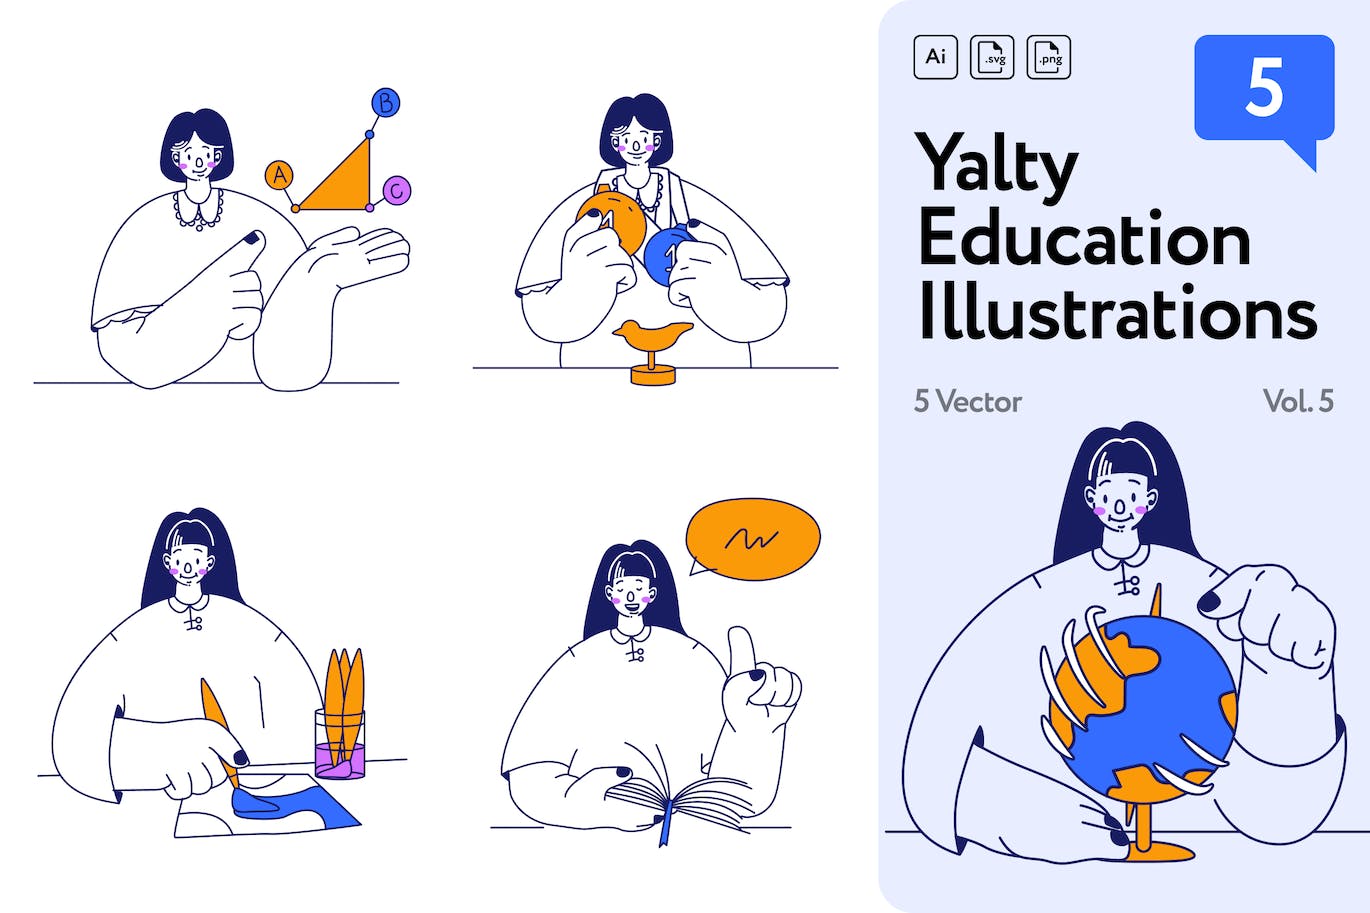 教育主题矢量插画素材 Vol.5 Yalty Education Illustrations Vol.5